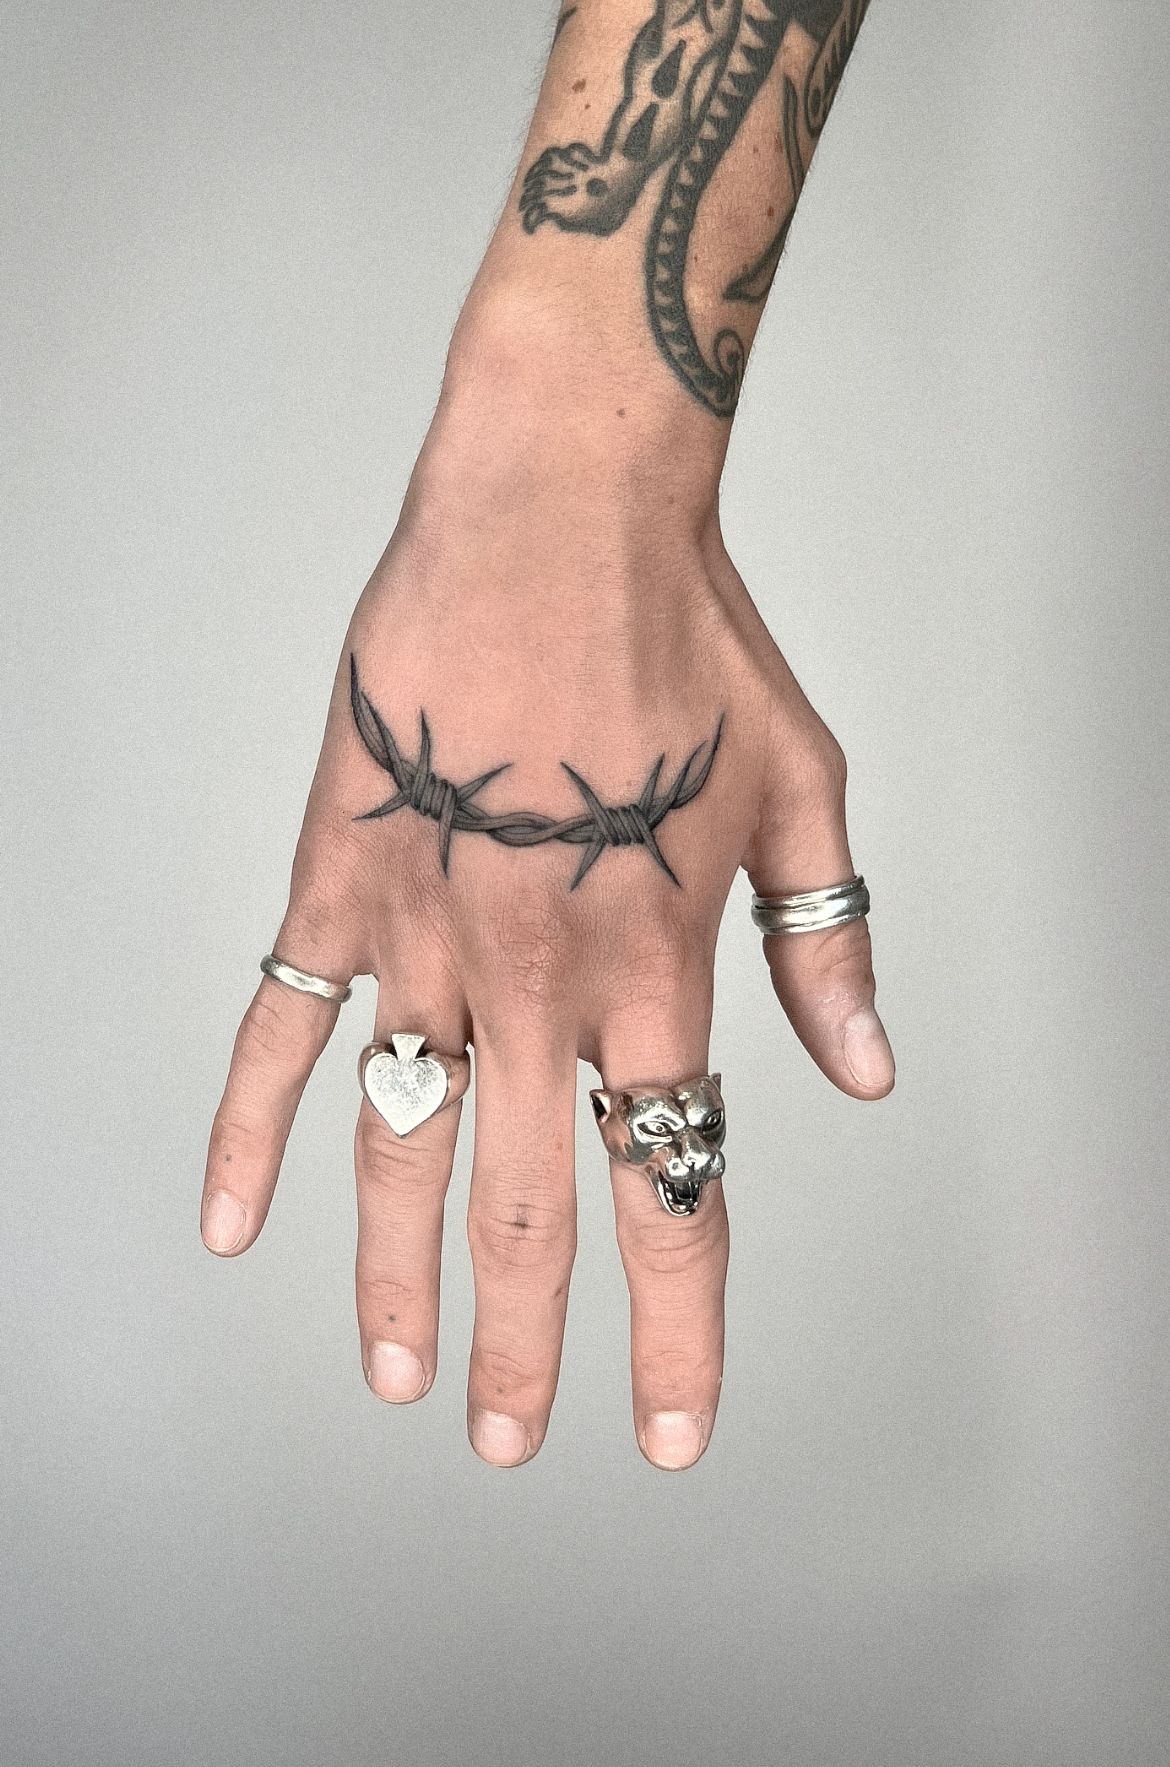 𝖌𝖔𝖙𝖍 𝖙𝖆𝖙𝖘   Finger tattoos Hand poked tattoo Chain tattoo